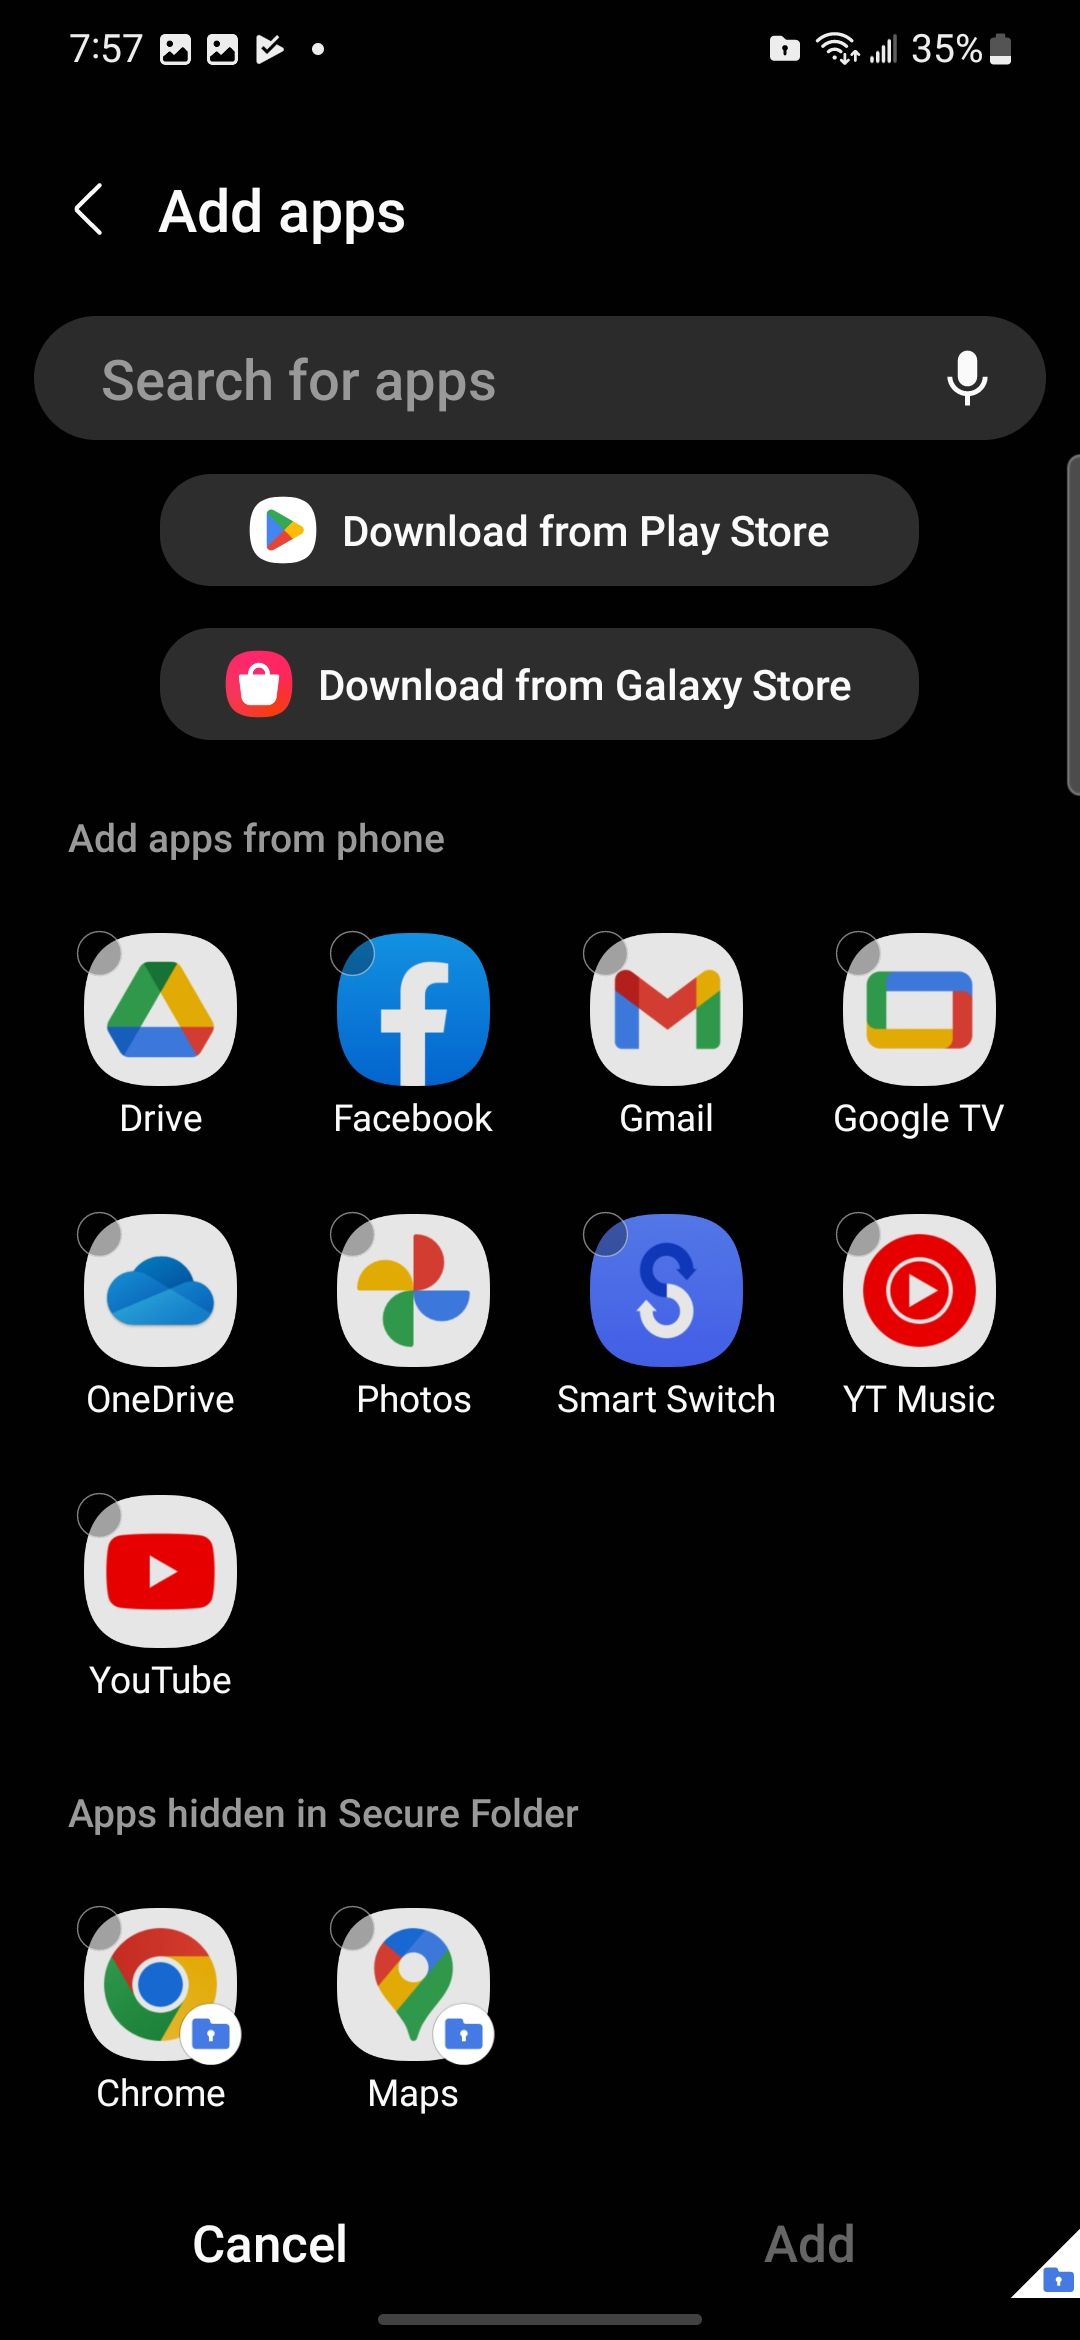 The add apps screen in Secure Folder